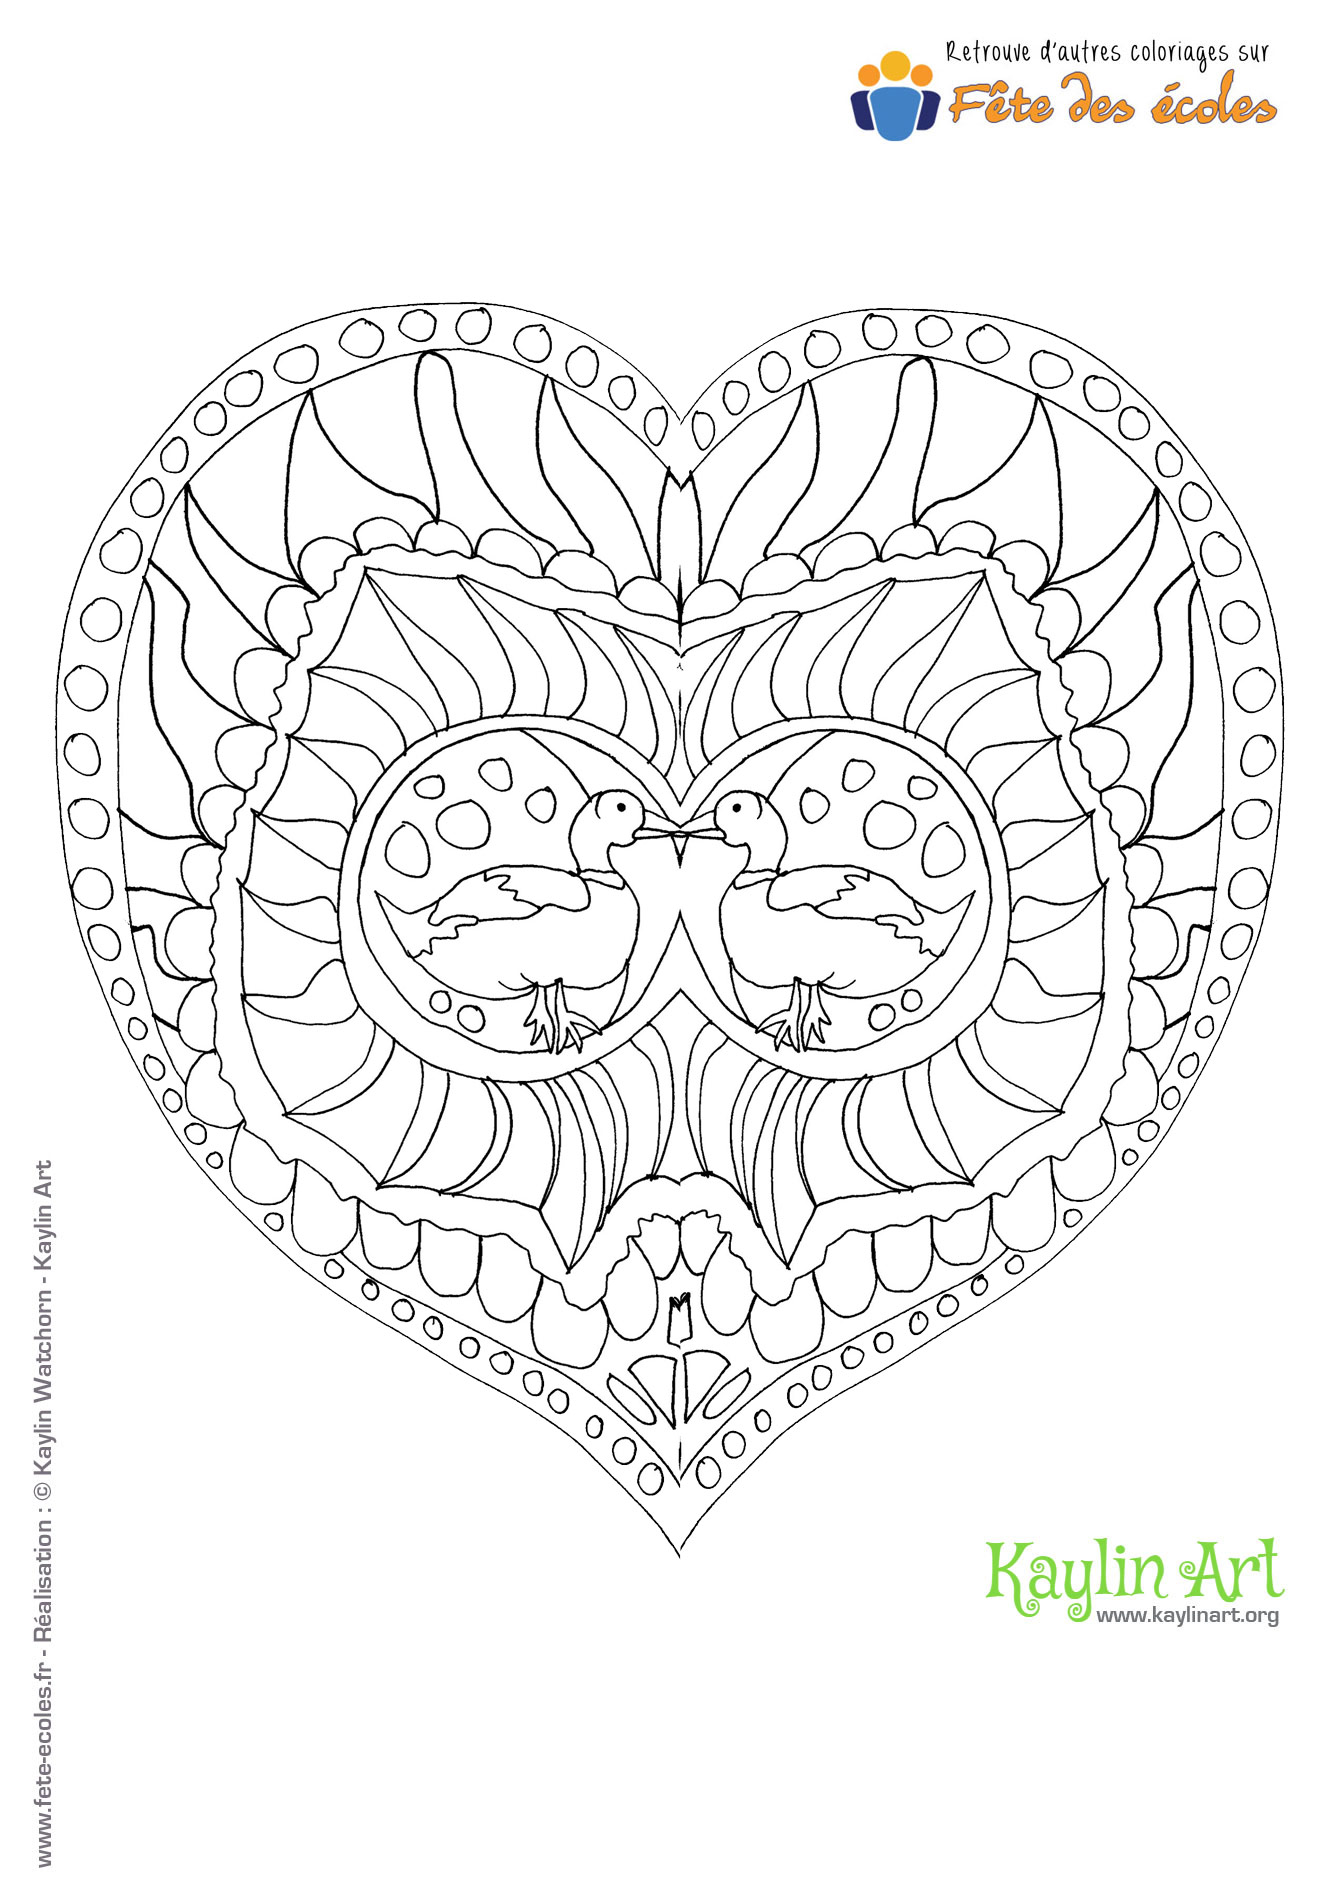 Coloriage de mandala en forme de cœur avec des canards au milieu réalisé par KaylinArt sur Fête des Écoles